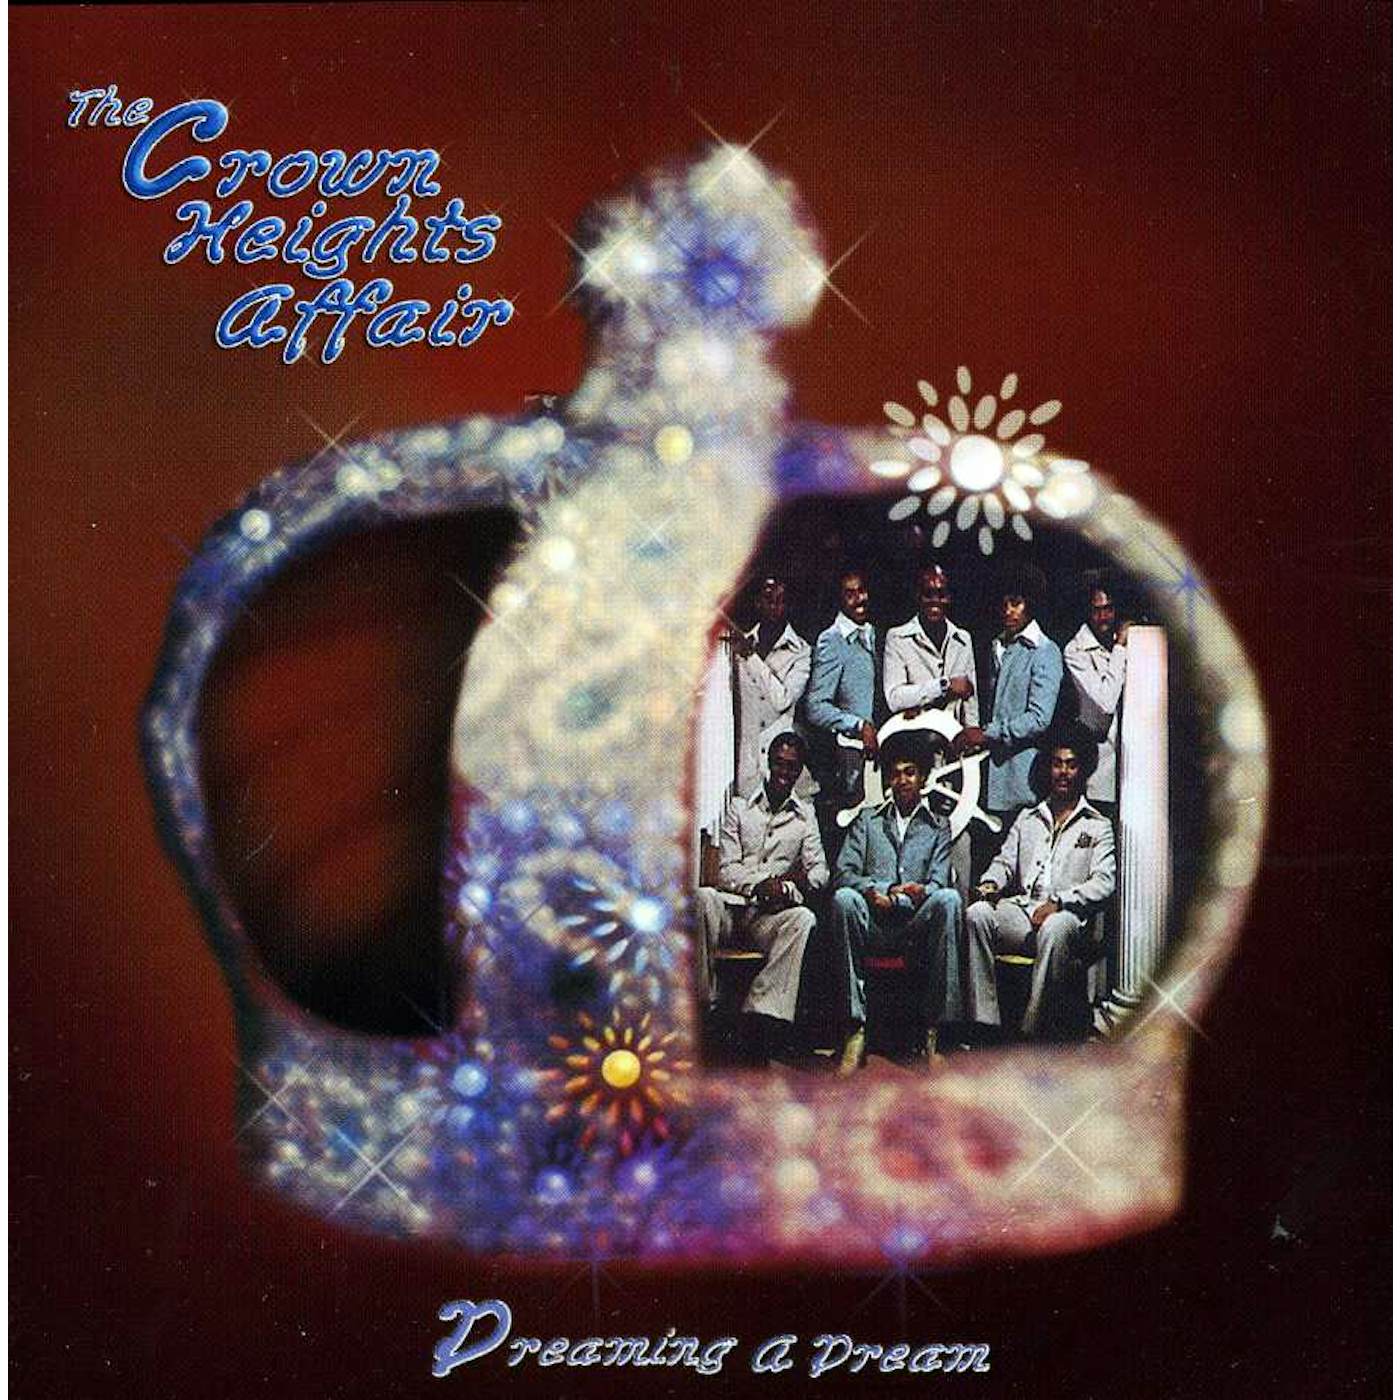 Crown Heights Affair DREAMING A DREAM CD